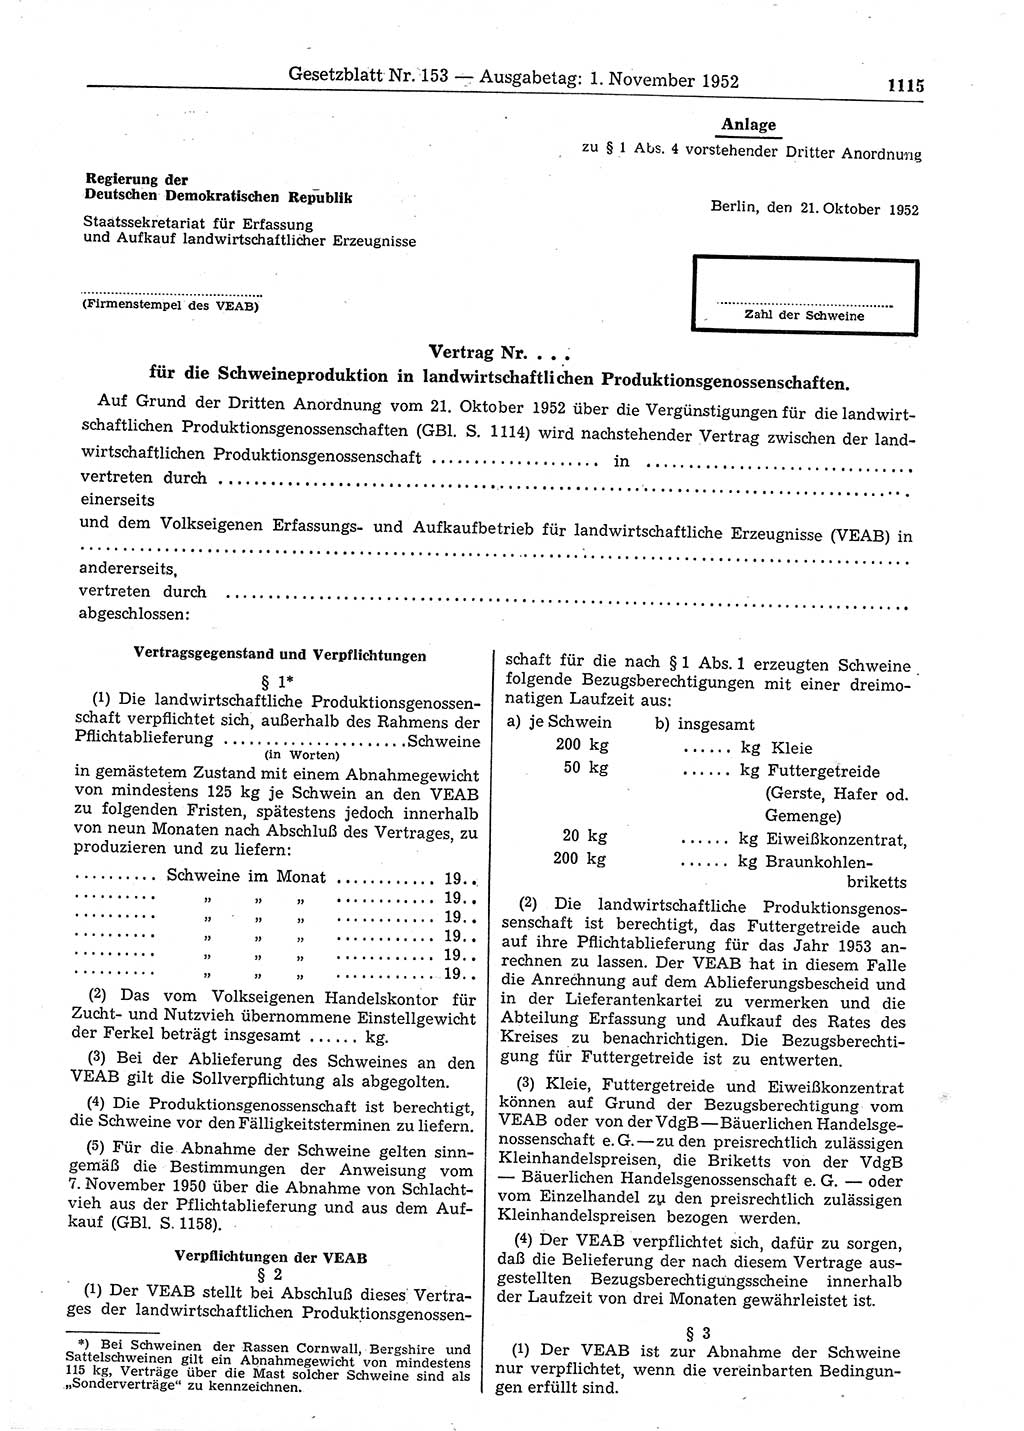 Gesetzblatt (GBl.) der Deutschen Demokratischen Republik (DDR) 1952, Seite 1115 (GBl. DDR 1952, S. 1115)